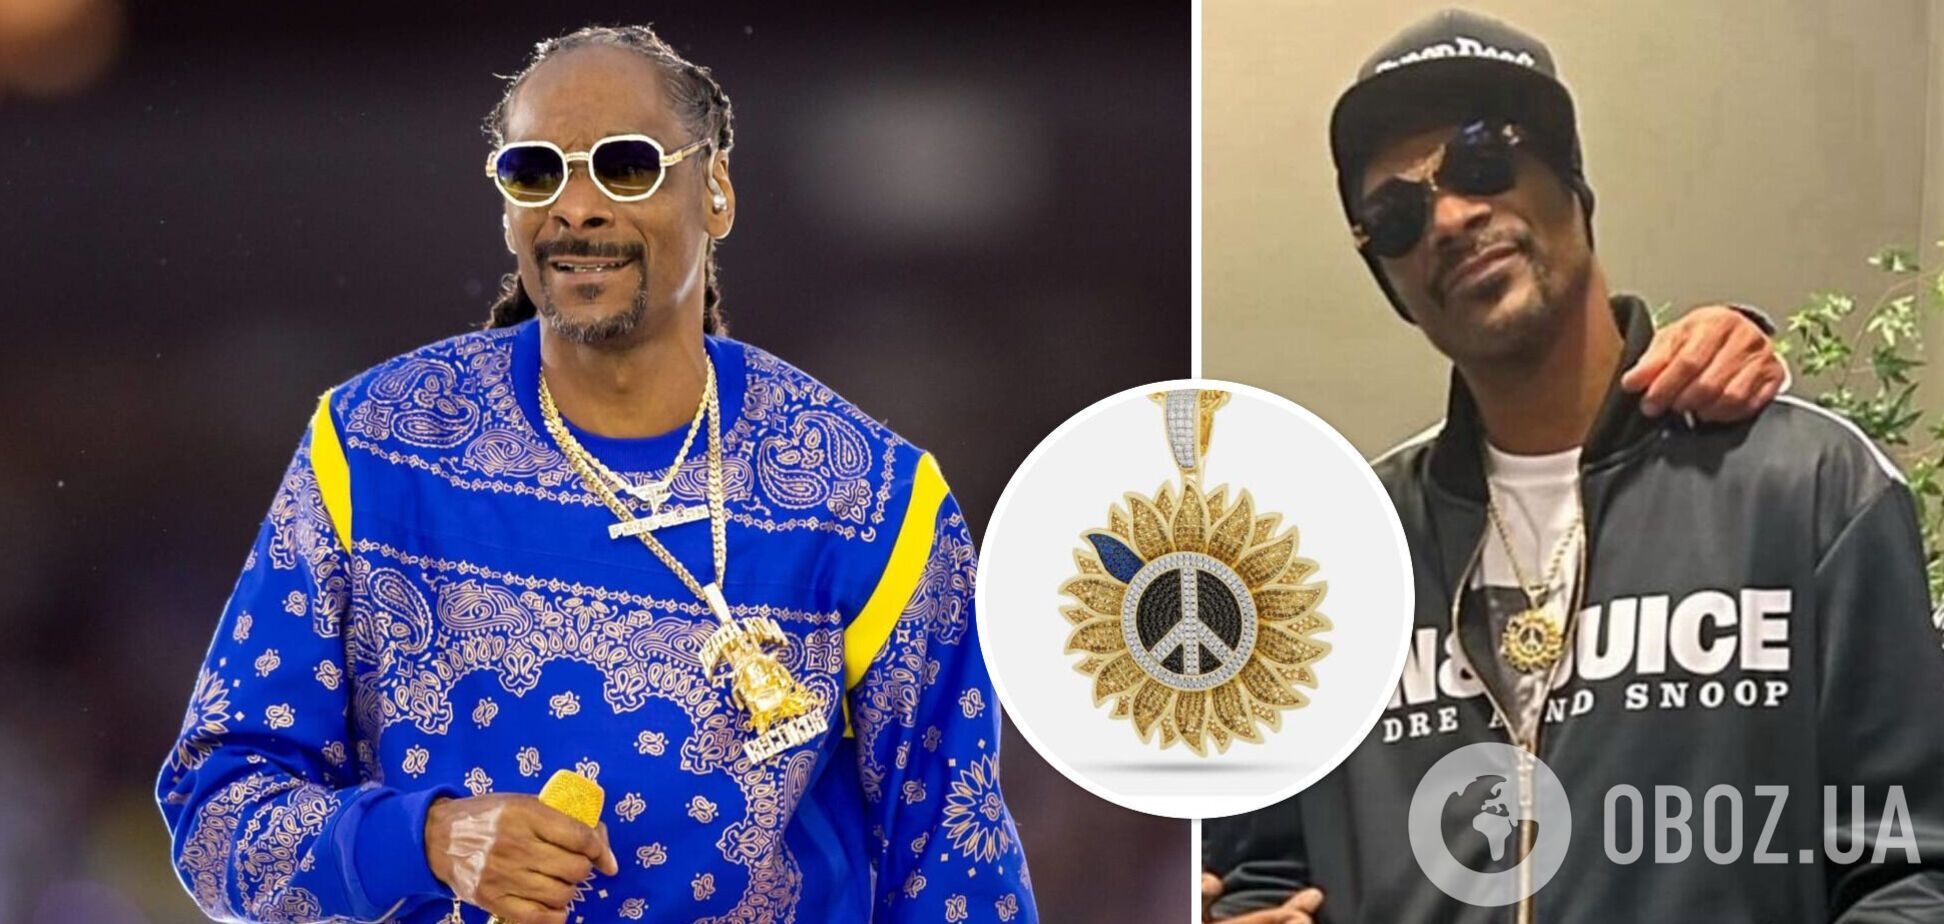 'Наш козак!' Рэпера Snoop Dogg заметили с украшением в поддержку Украины. Фото